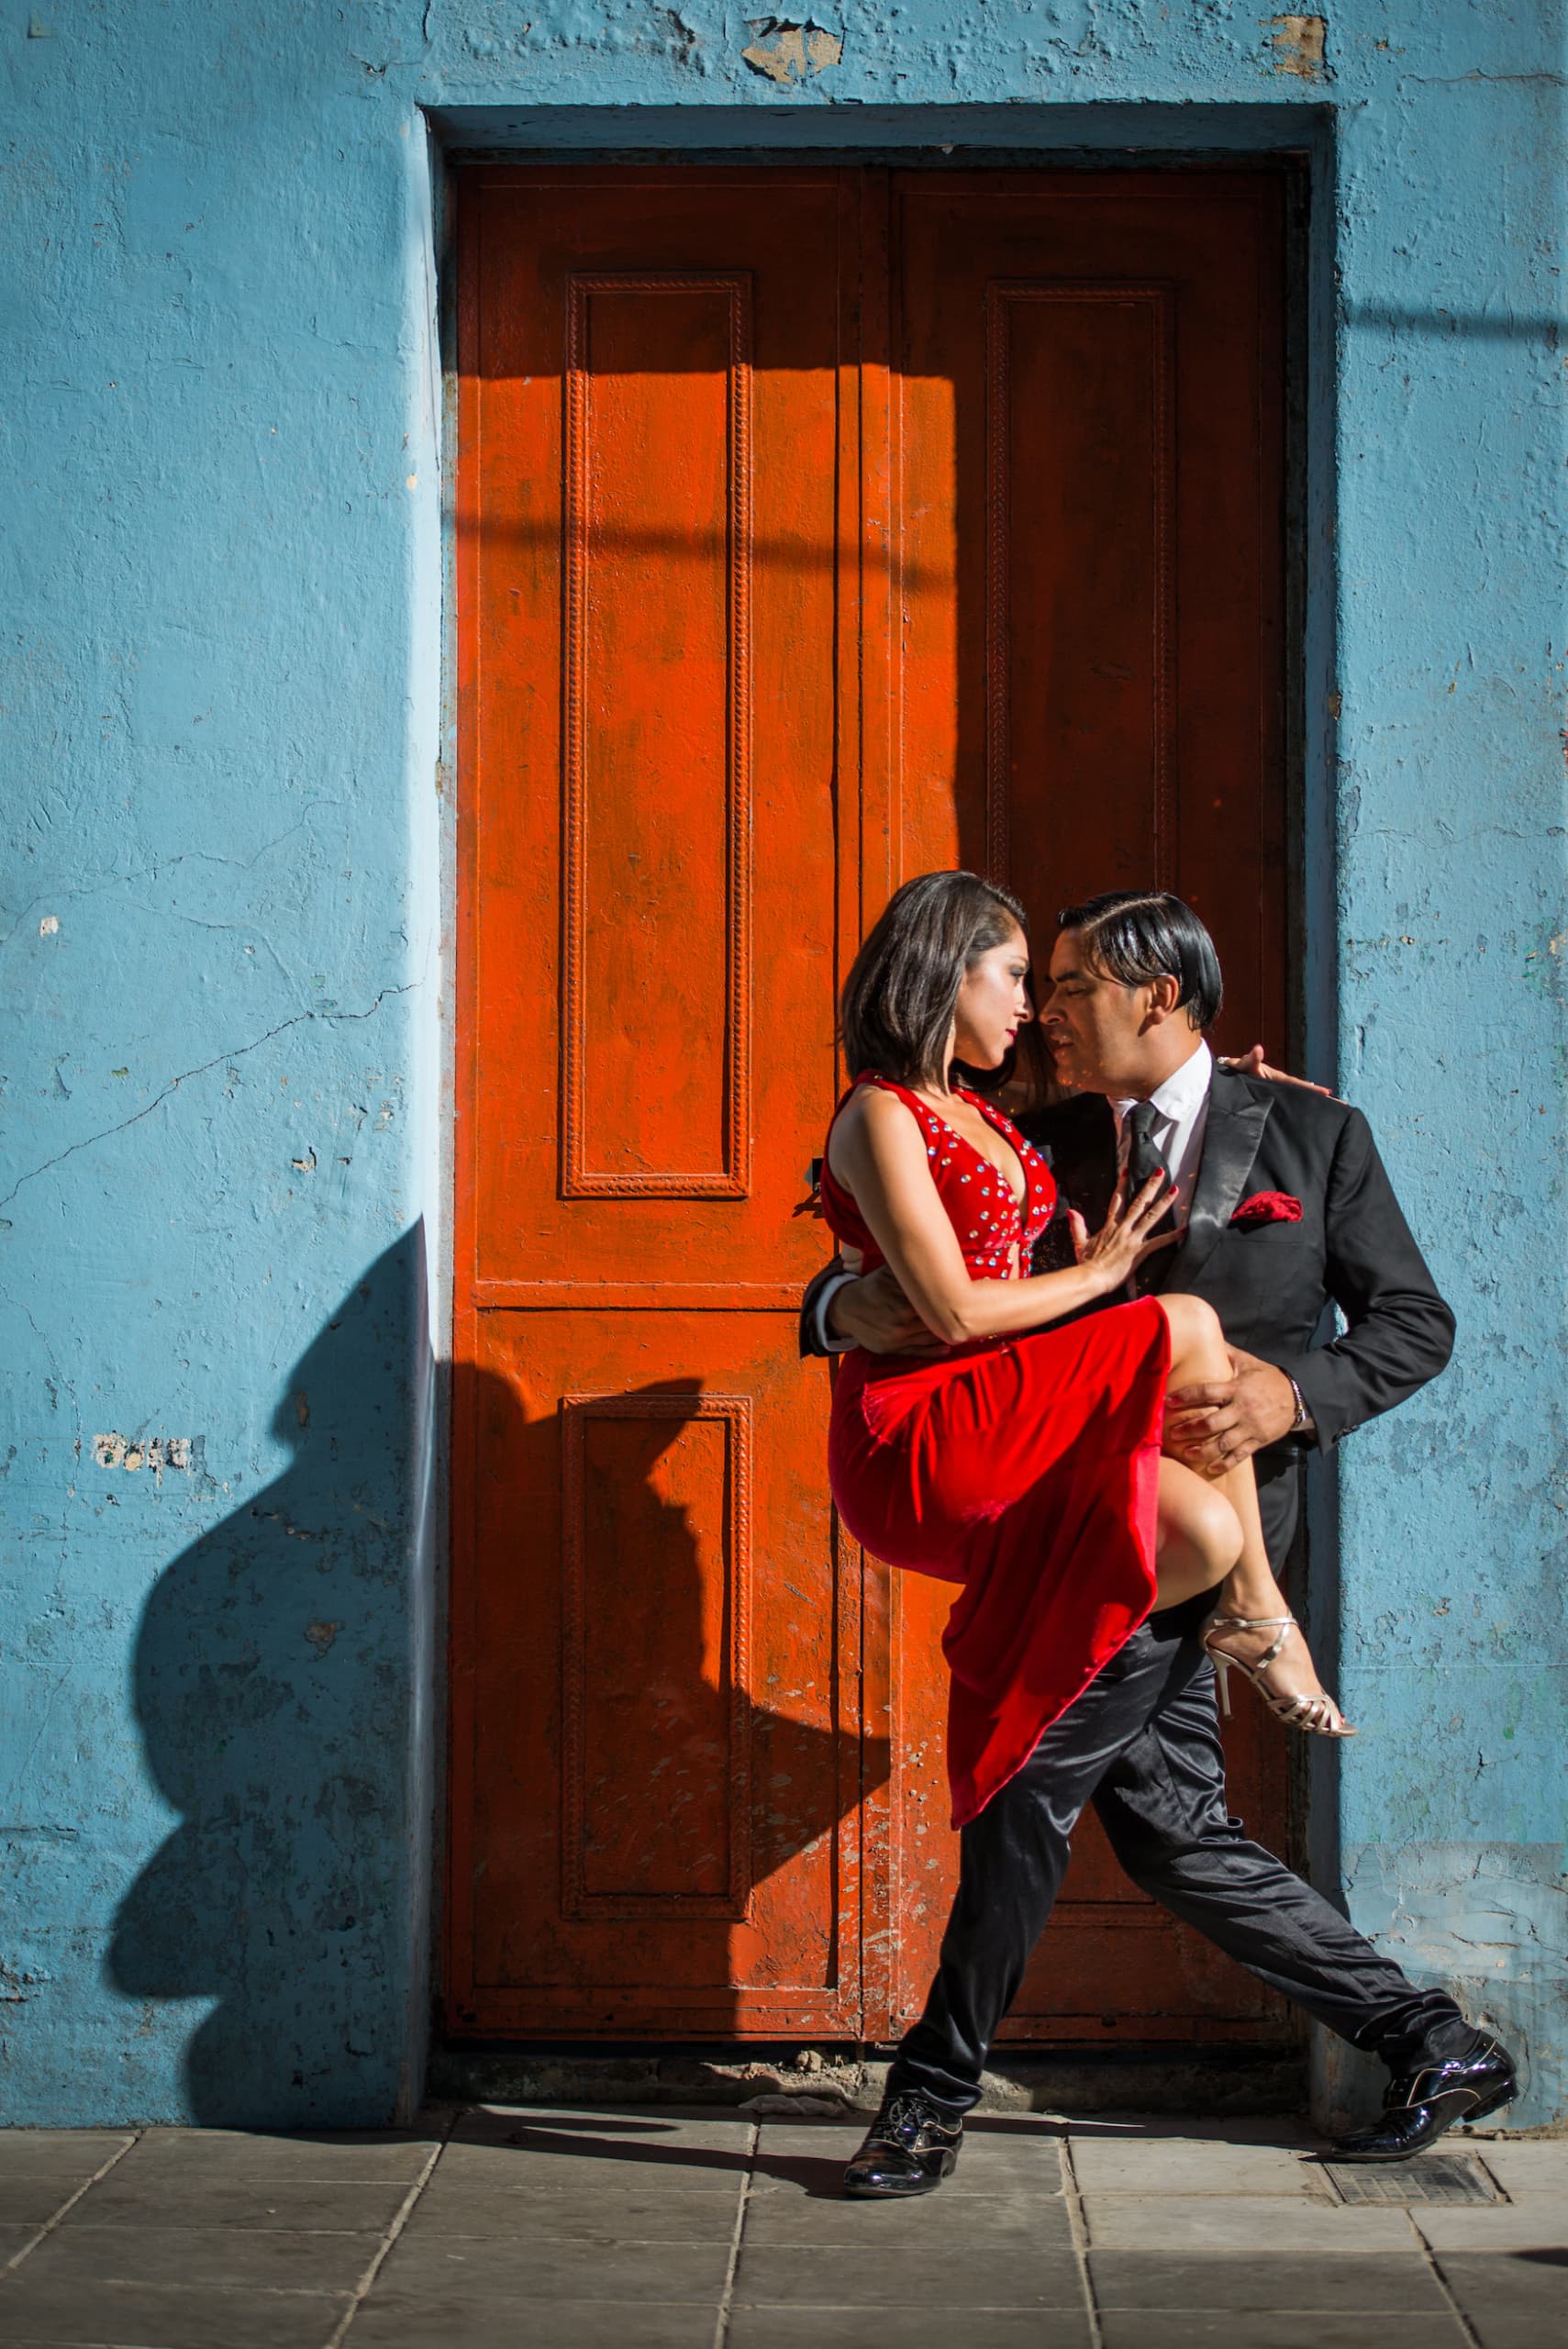 Frau und Mann tanzen Tango auf einer Straße in Argentinien